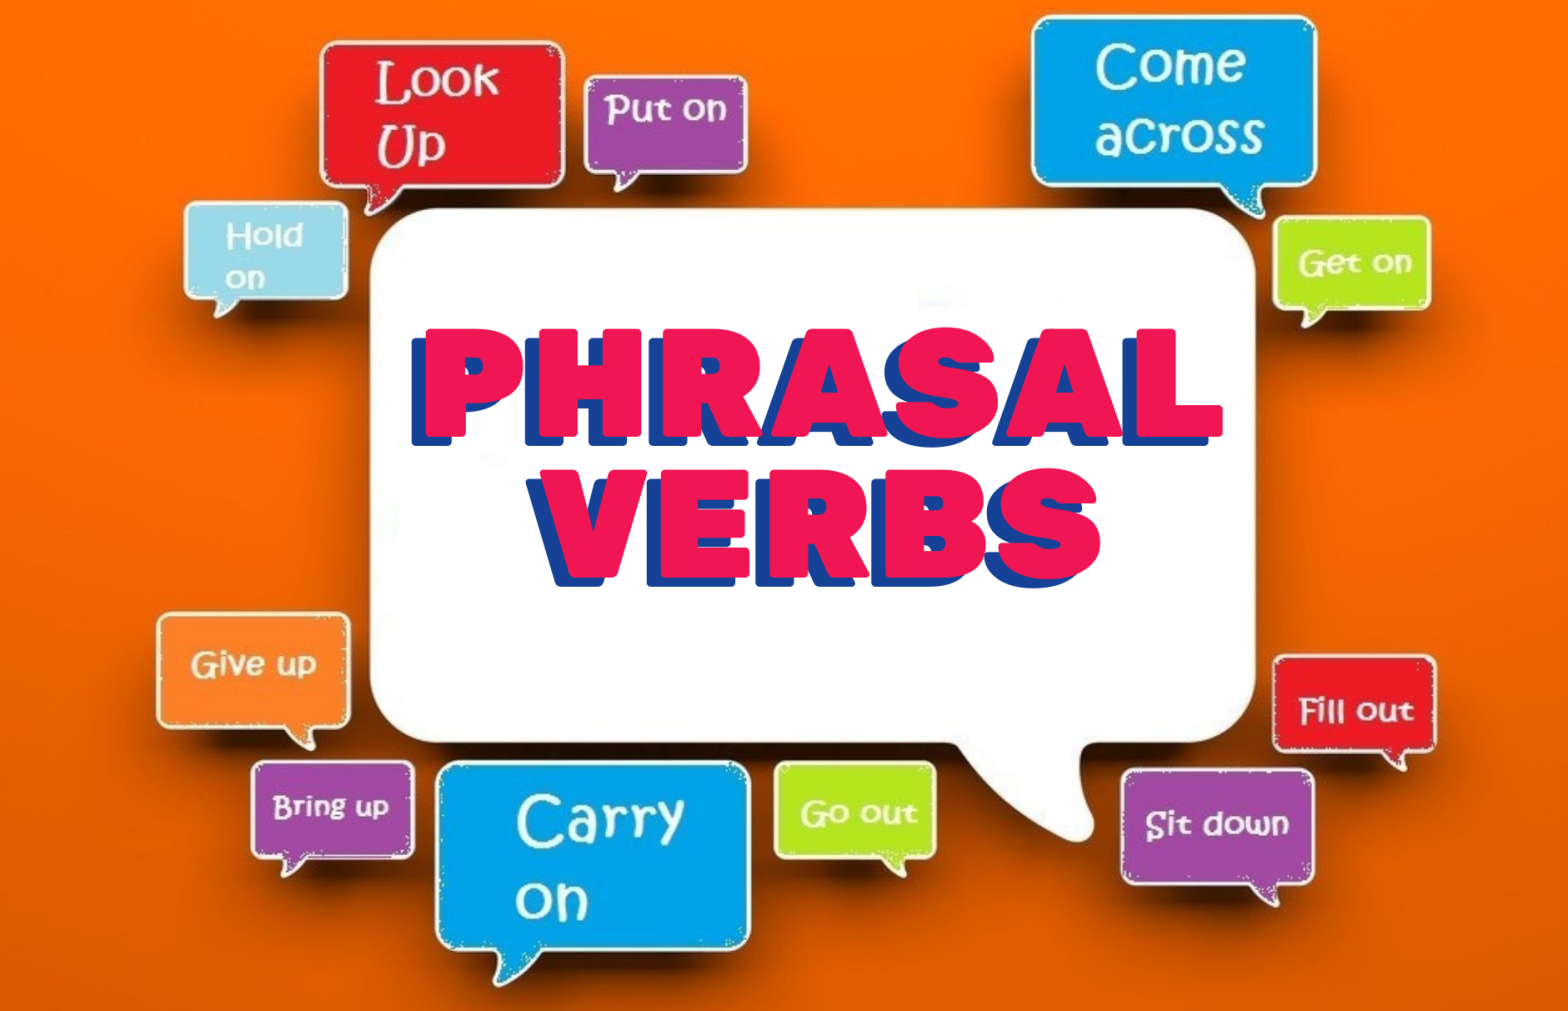 Aprenda e pratique phrasal verbs com exemplos do cotidiano